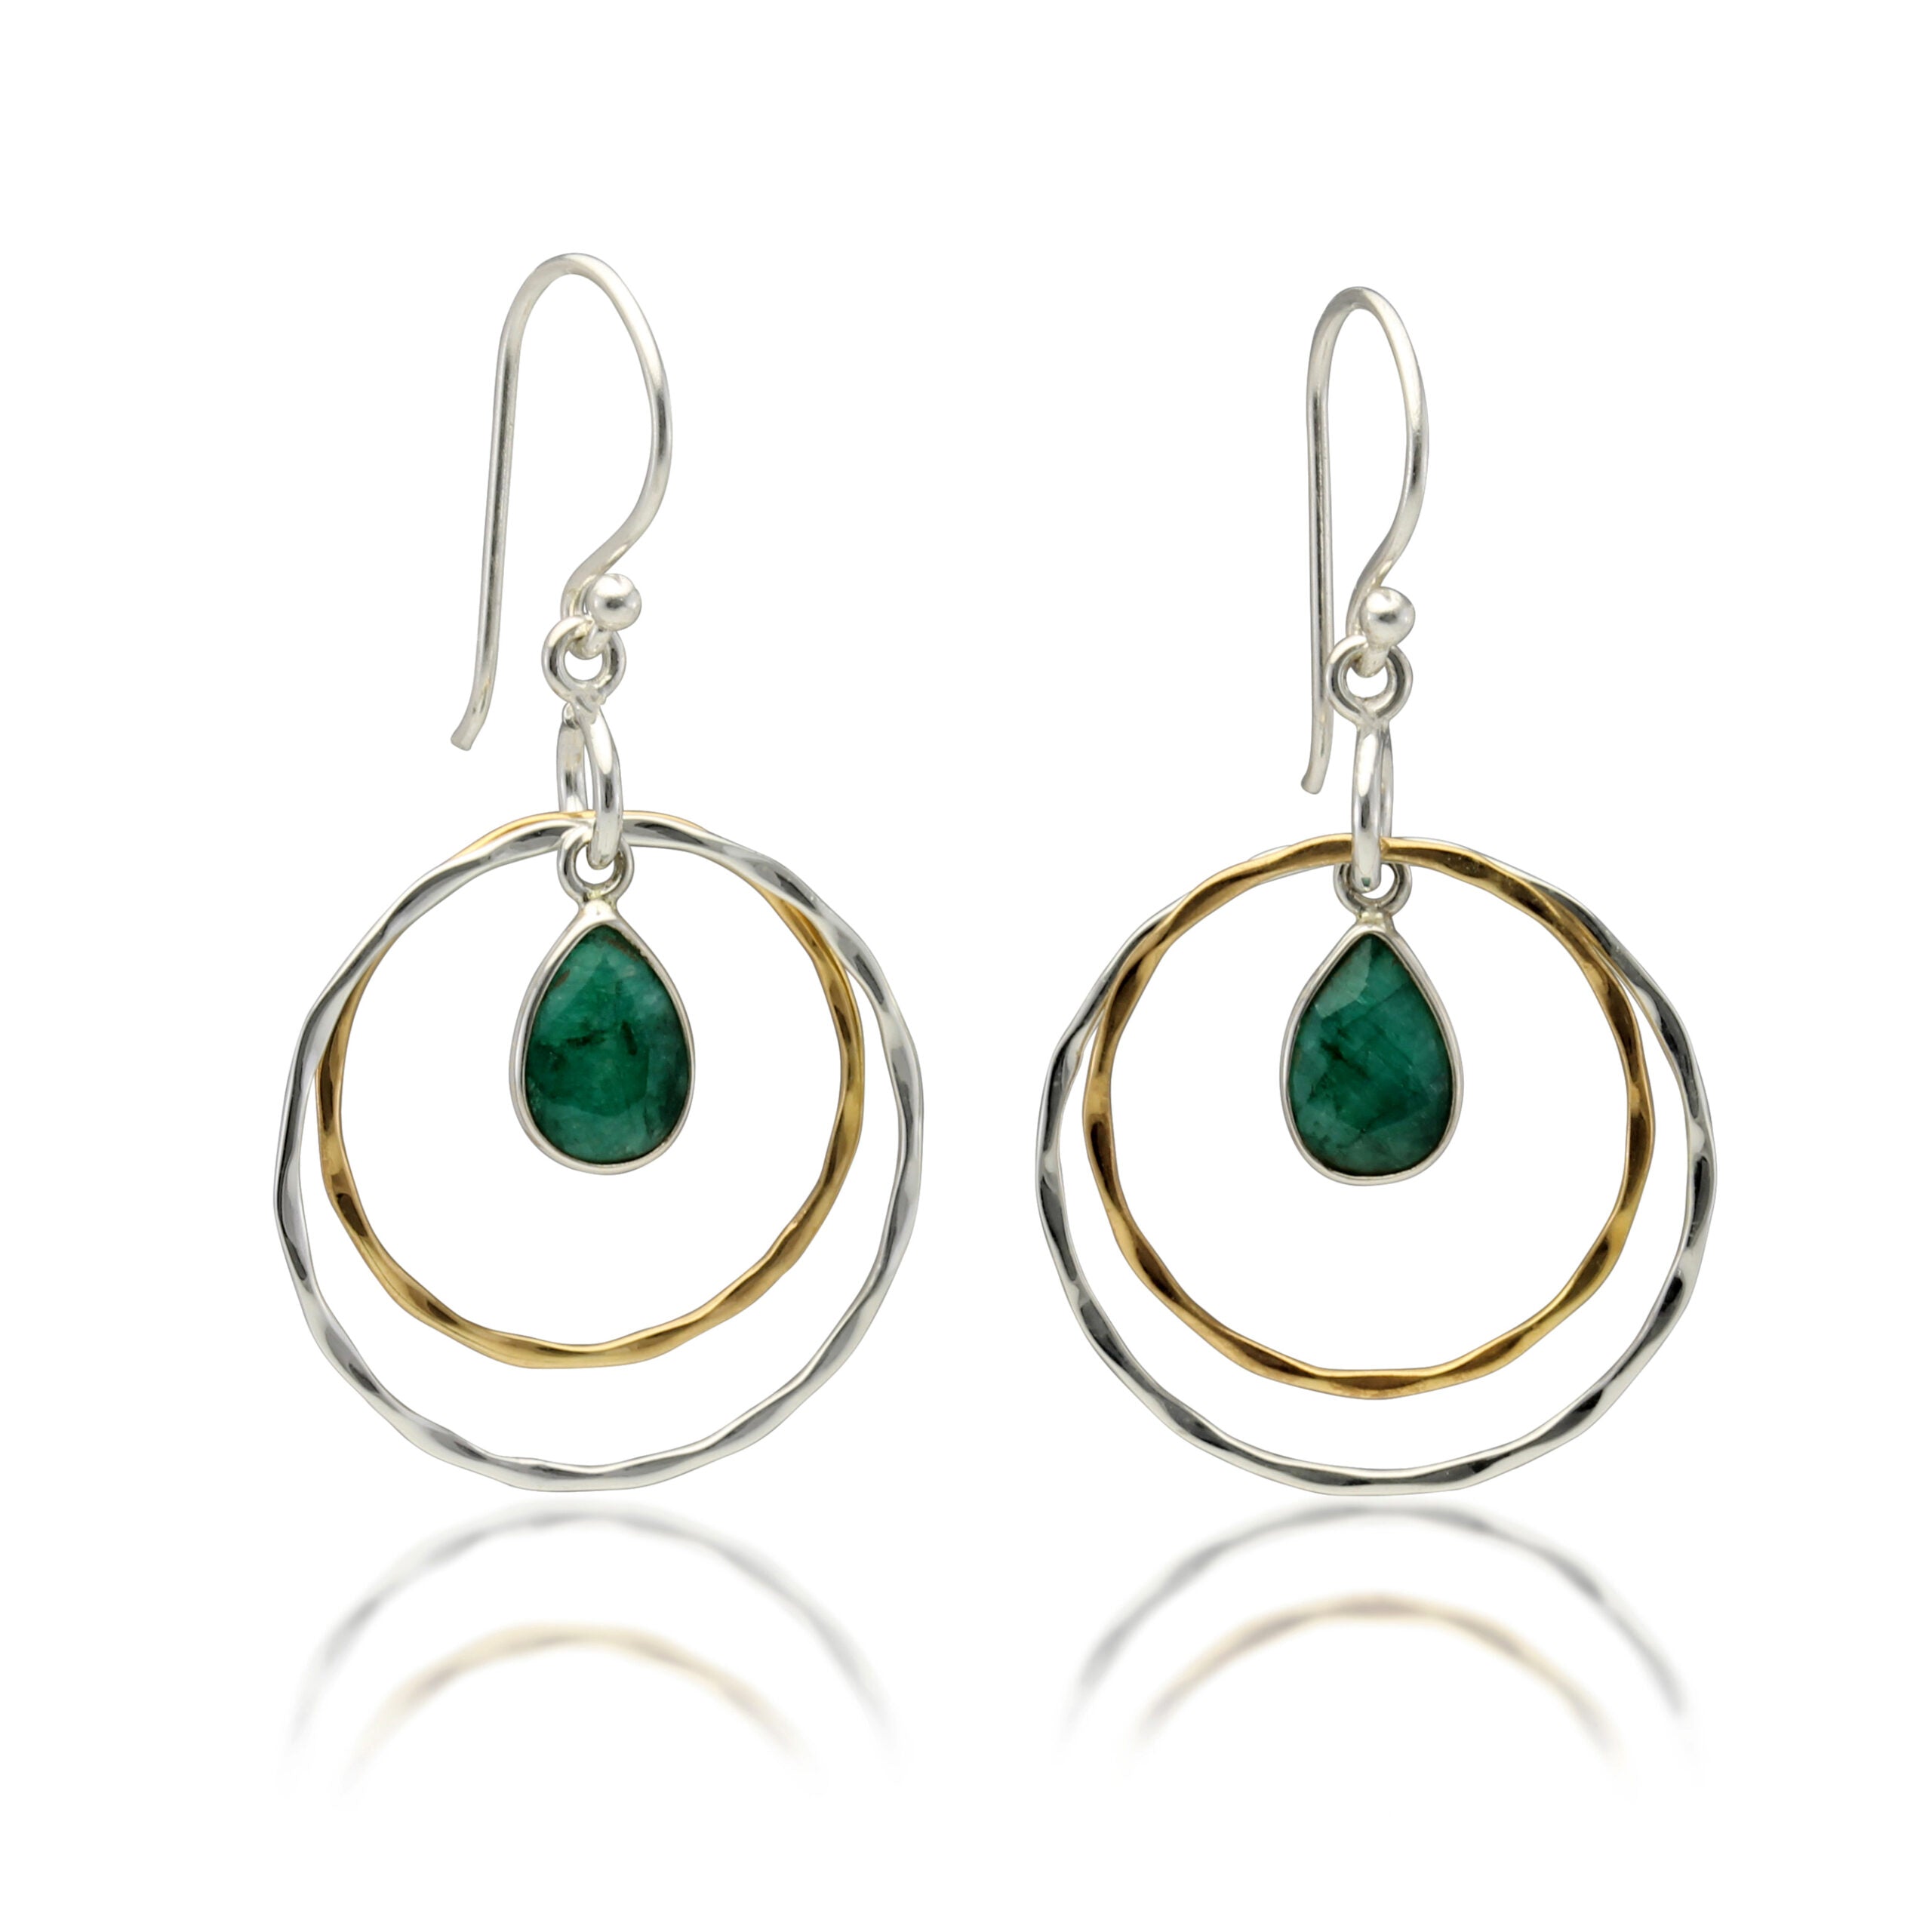 Jade Hoop Earrings - The Nancy Smillie Shop - Art, Jewellery & Designer Gifts Glasgow